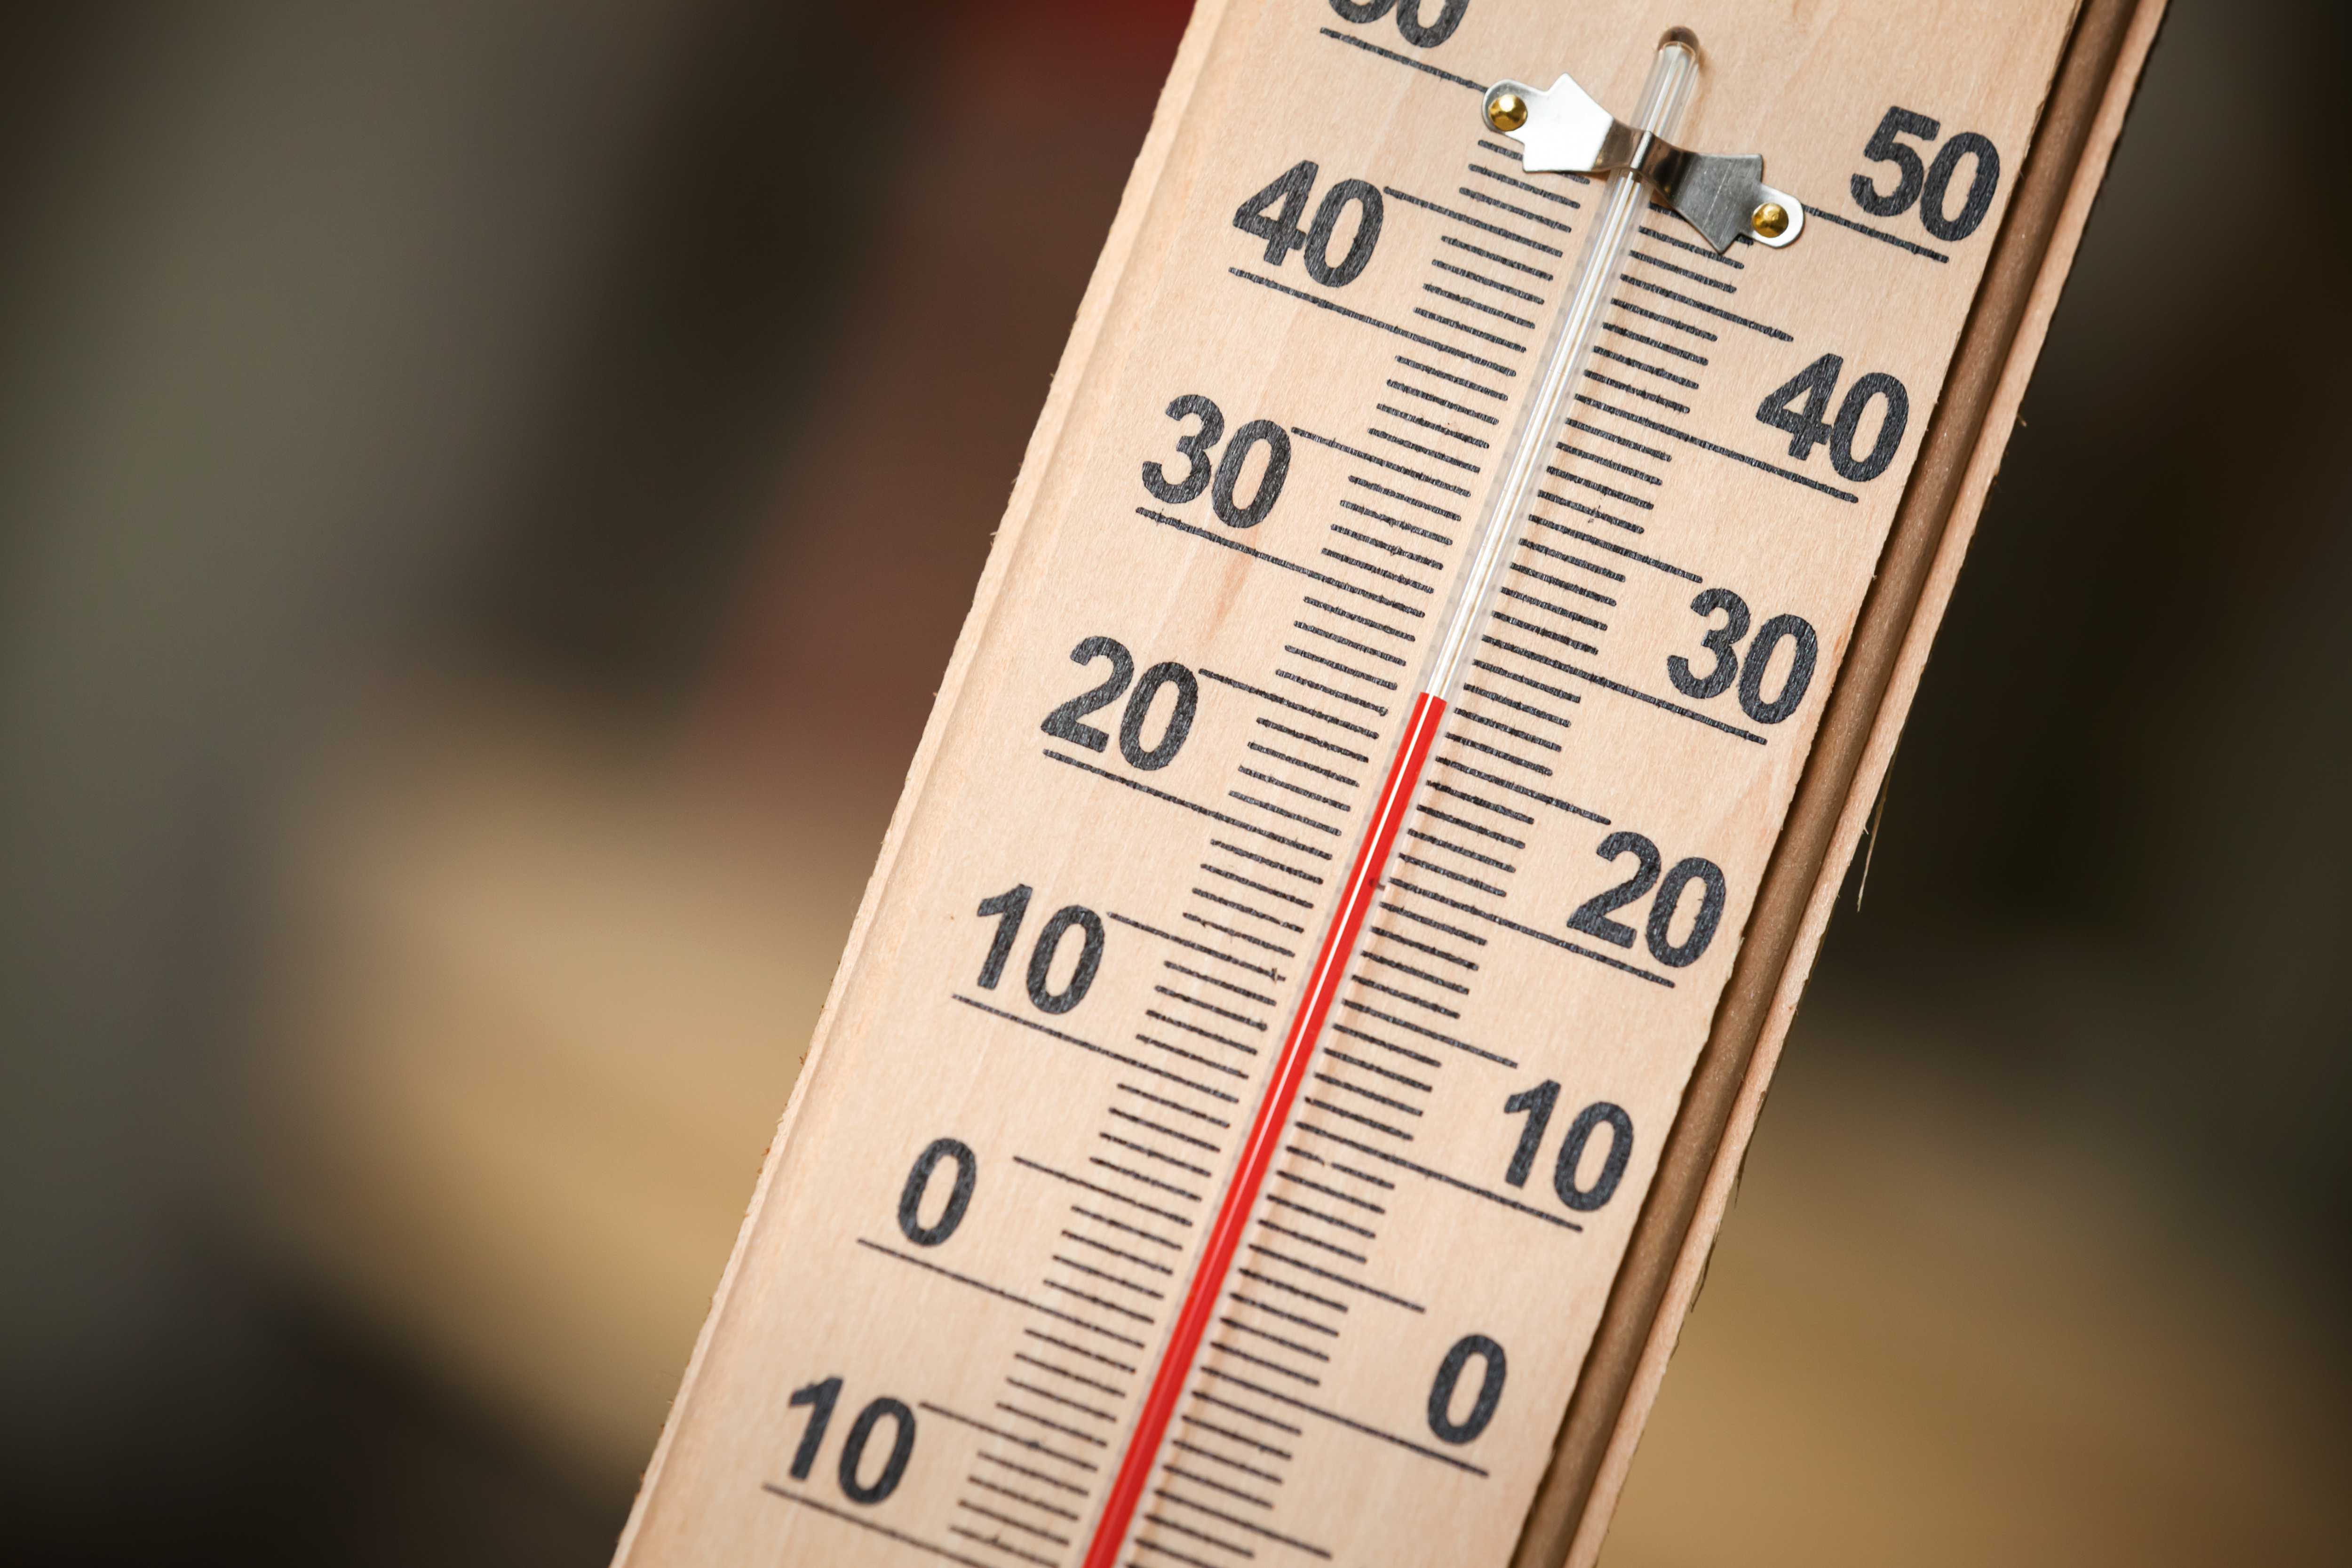 А. Яценюк: Если температура в квартире ниже 18 градусов, граждане имеют право на перерасчет тарифа за тепло